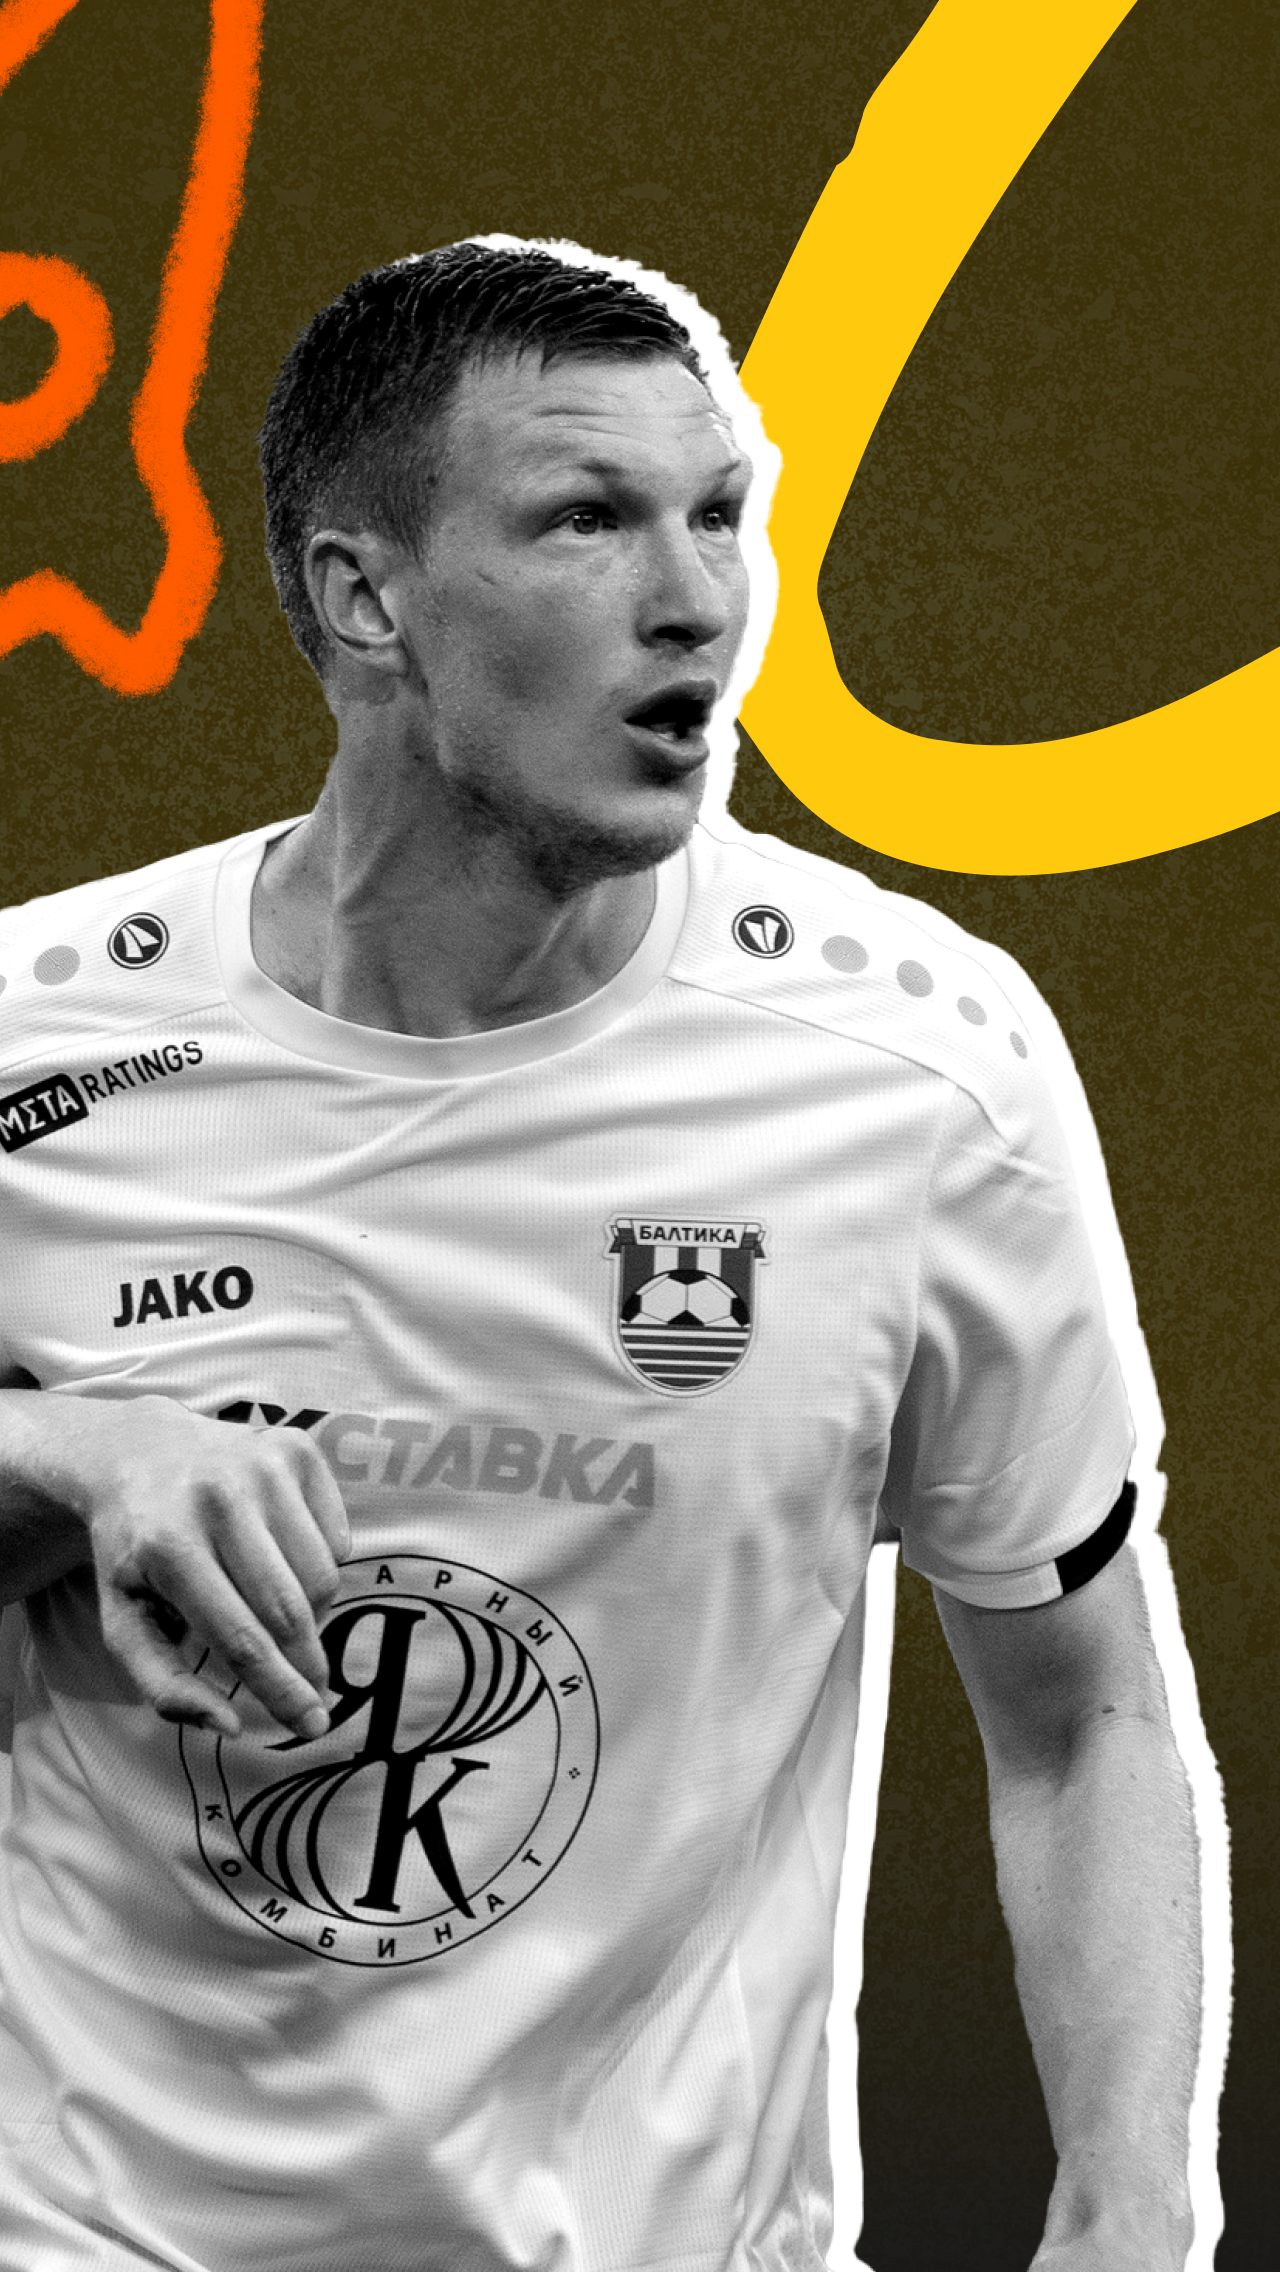 Сейчас 29-летний Пуцко снова играет. В августе он провёл четыре матча в Первой лиге, причём во всех вышел в стартовом составе.